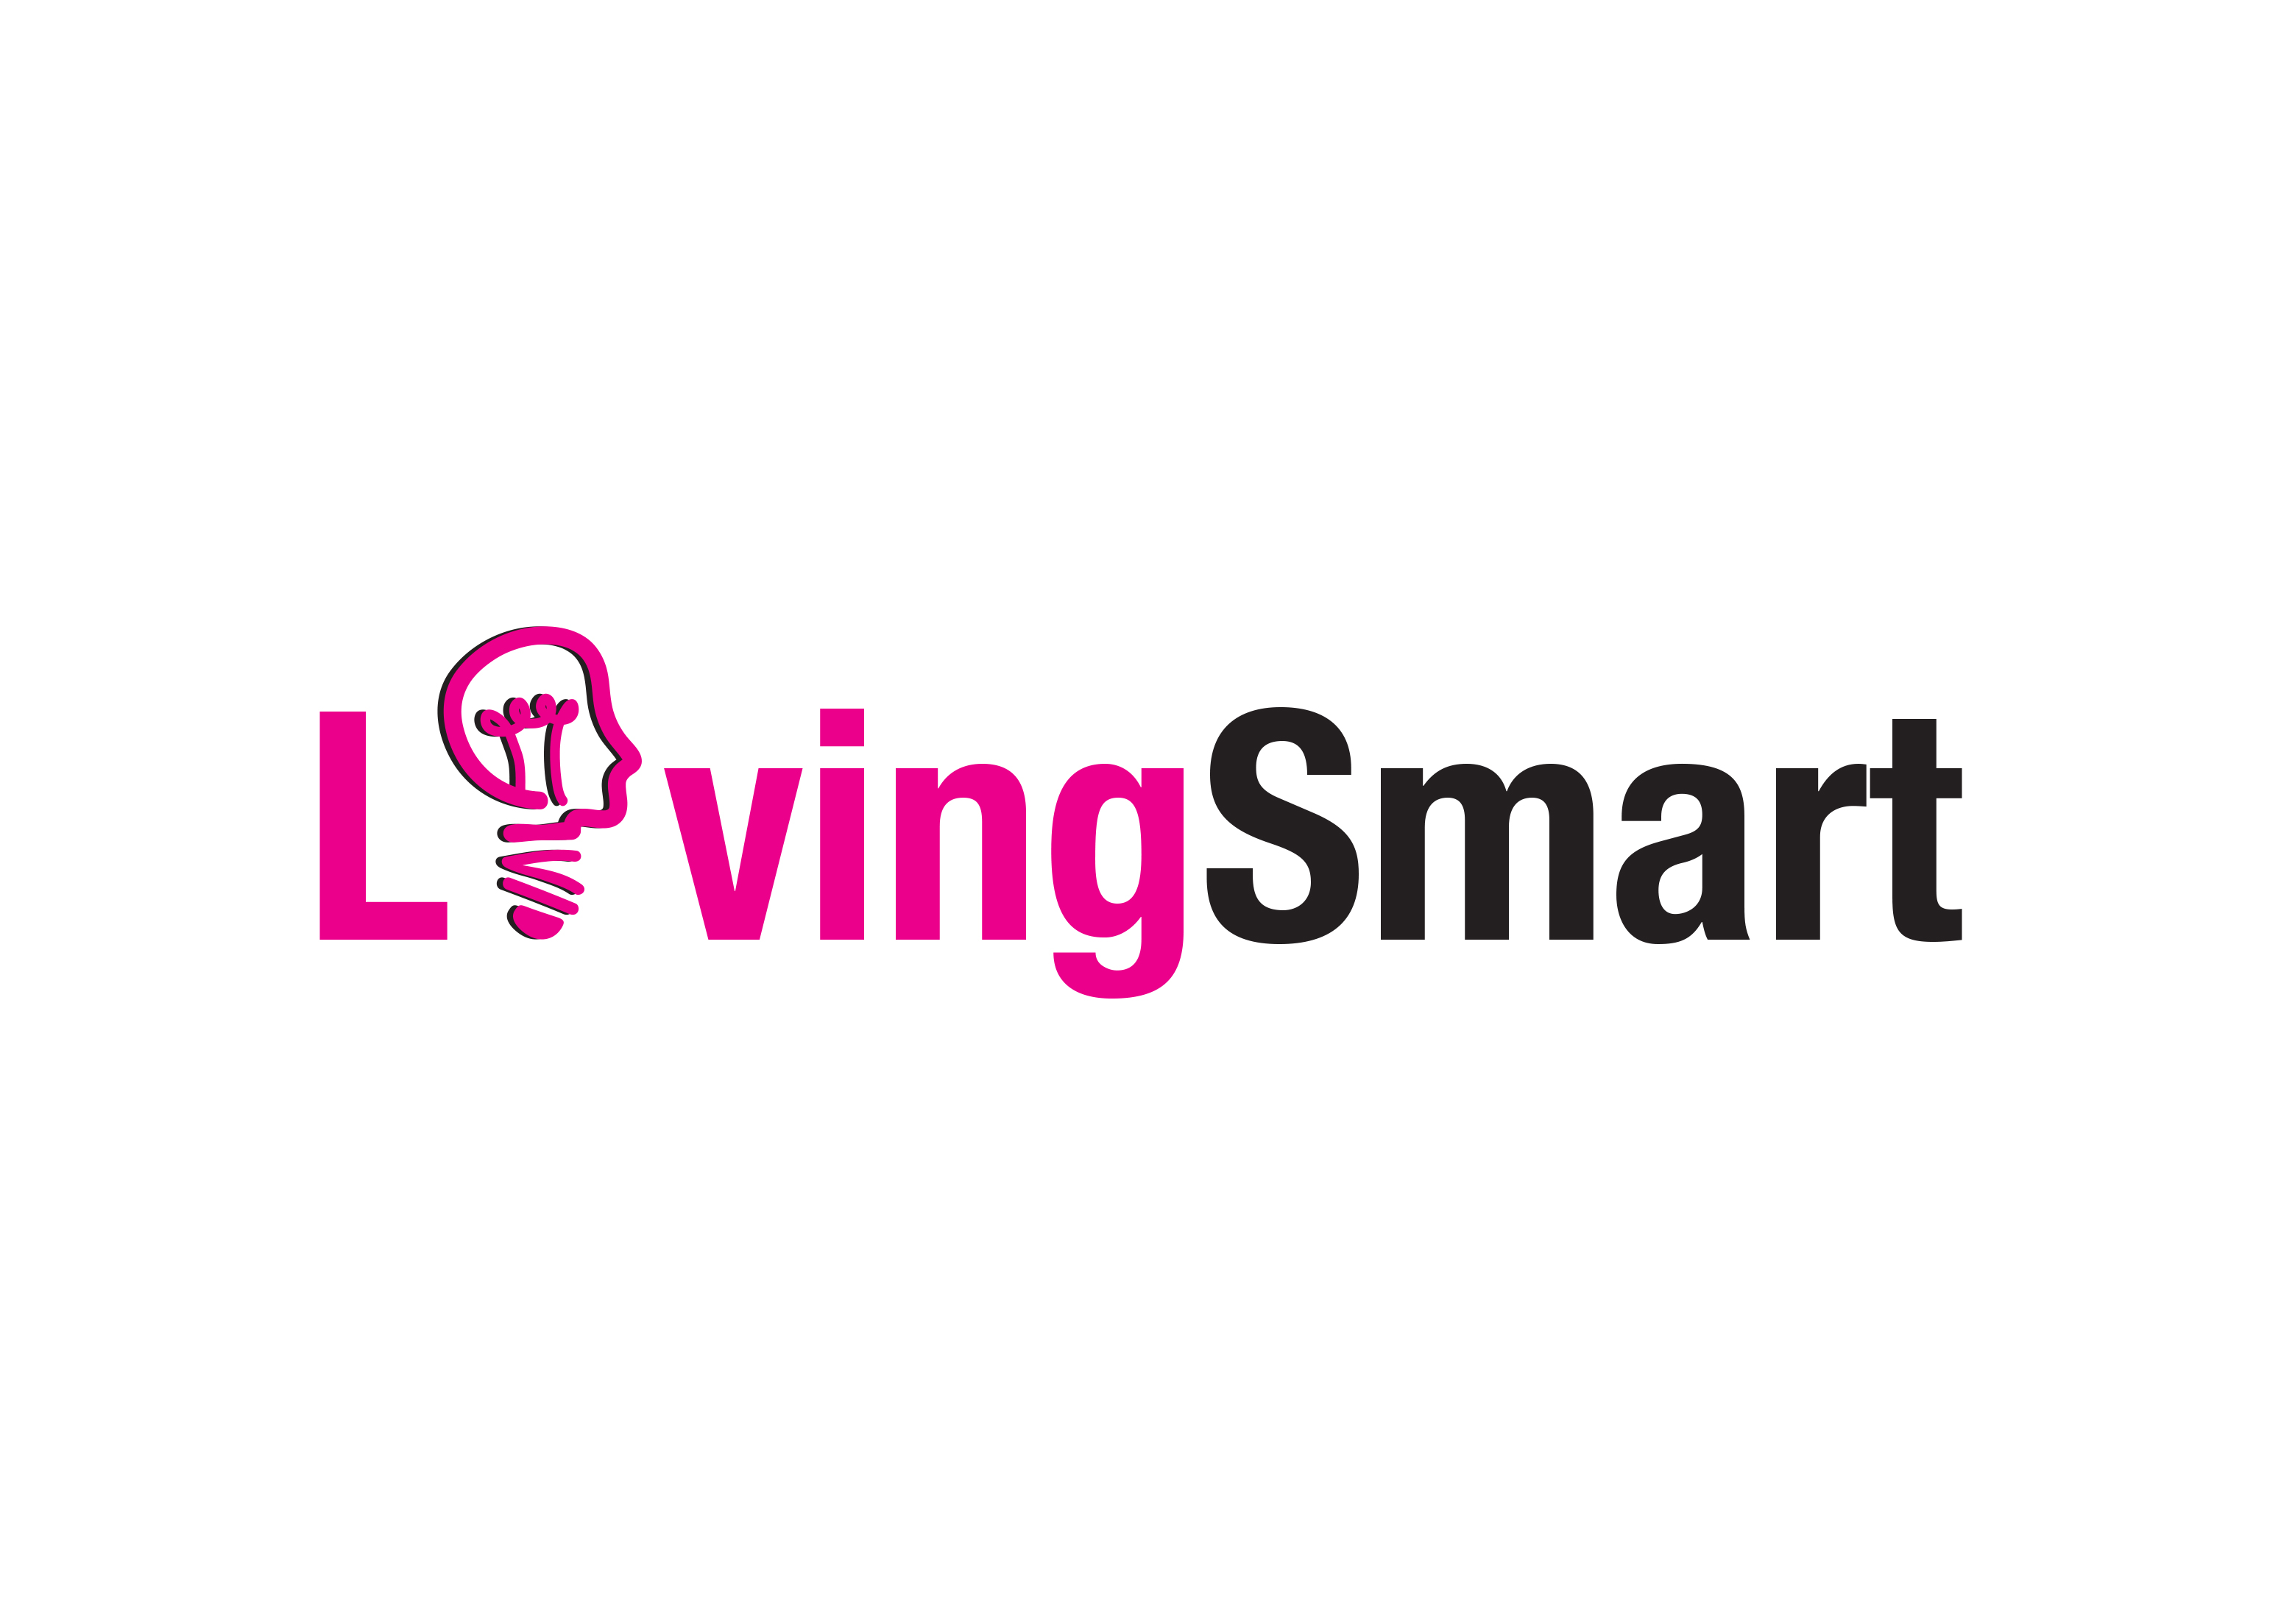 living-smart-logo Desgin 